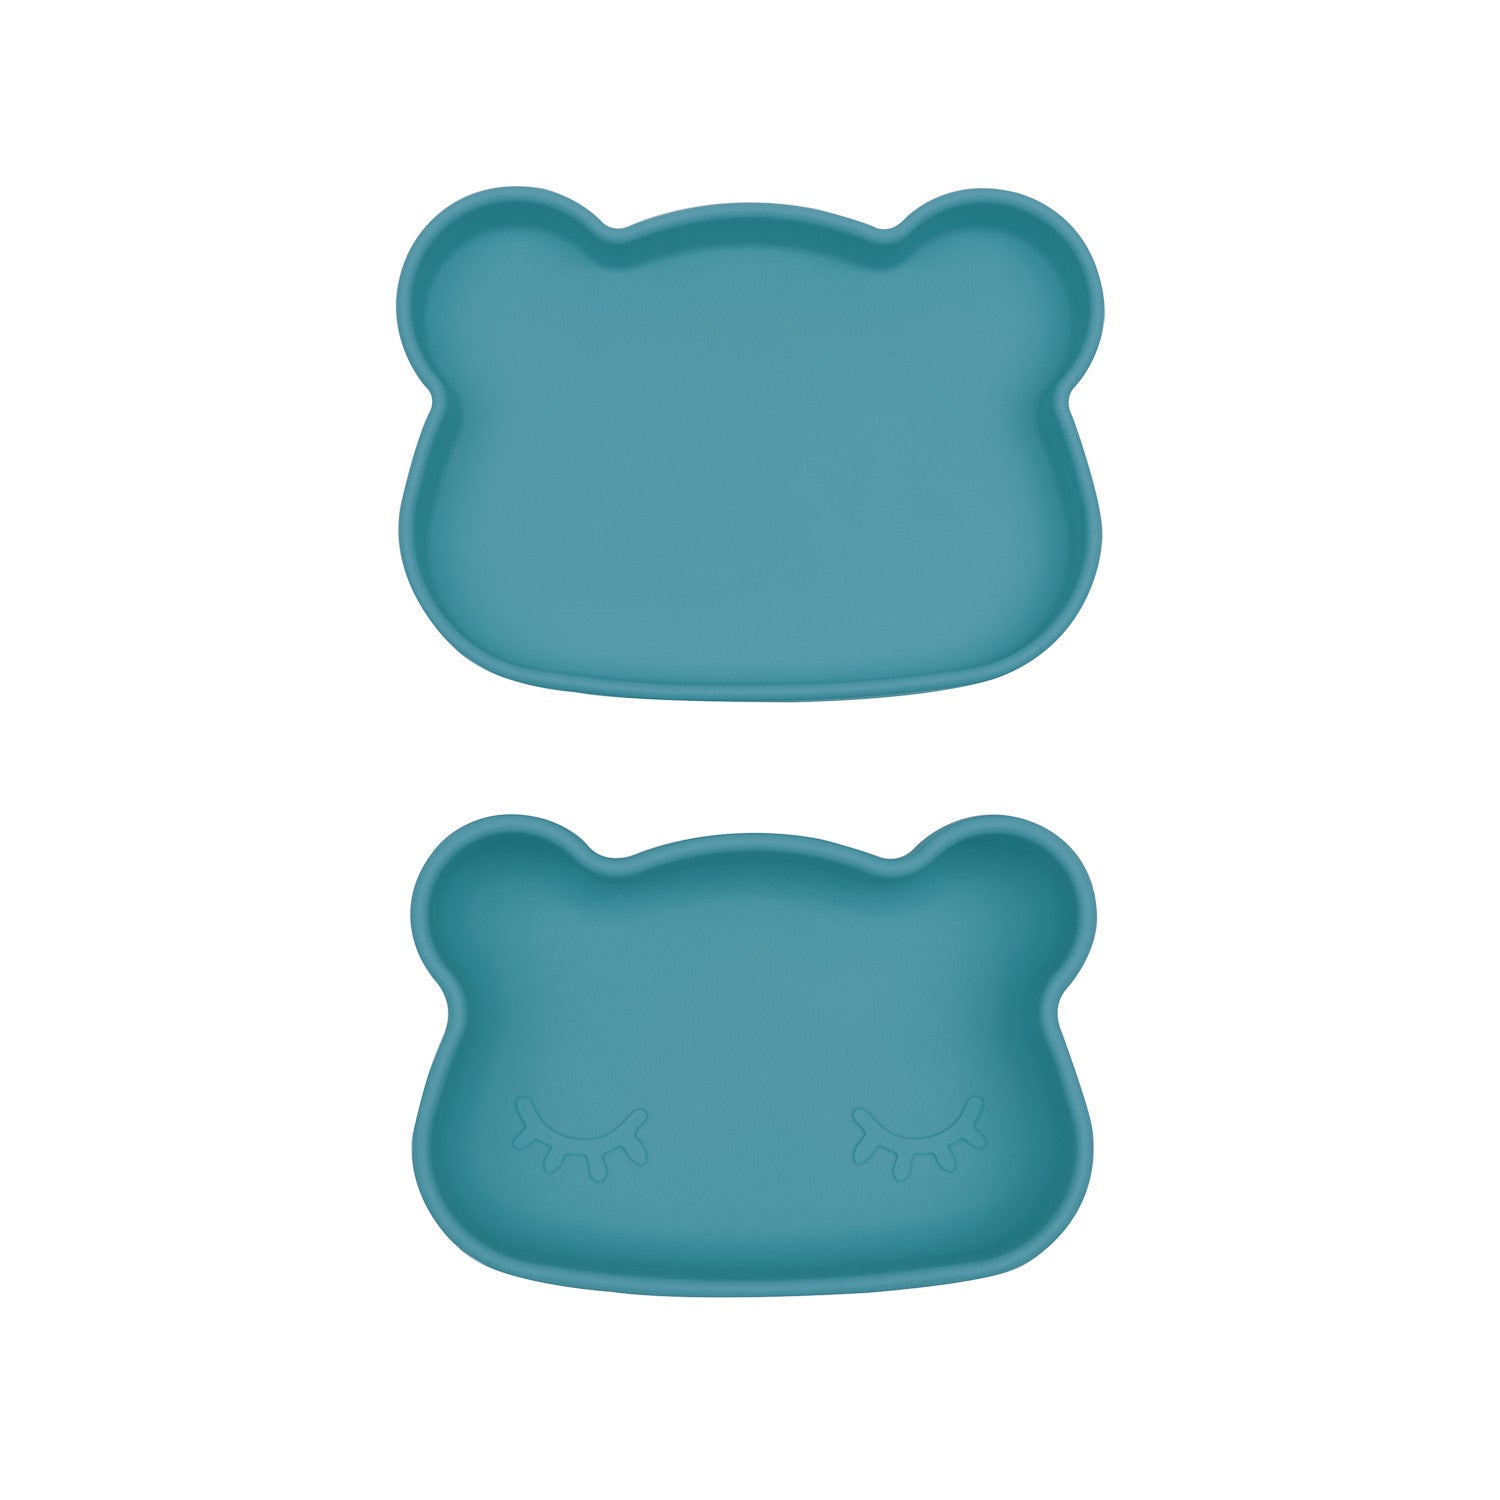 Bear snackie® - Blue dusk